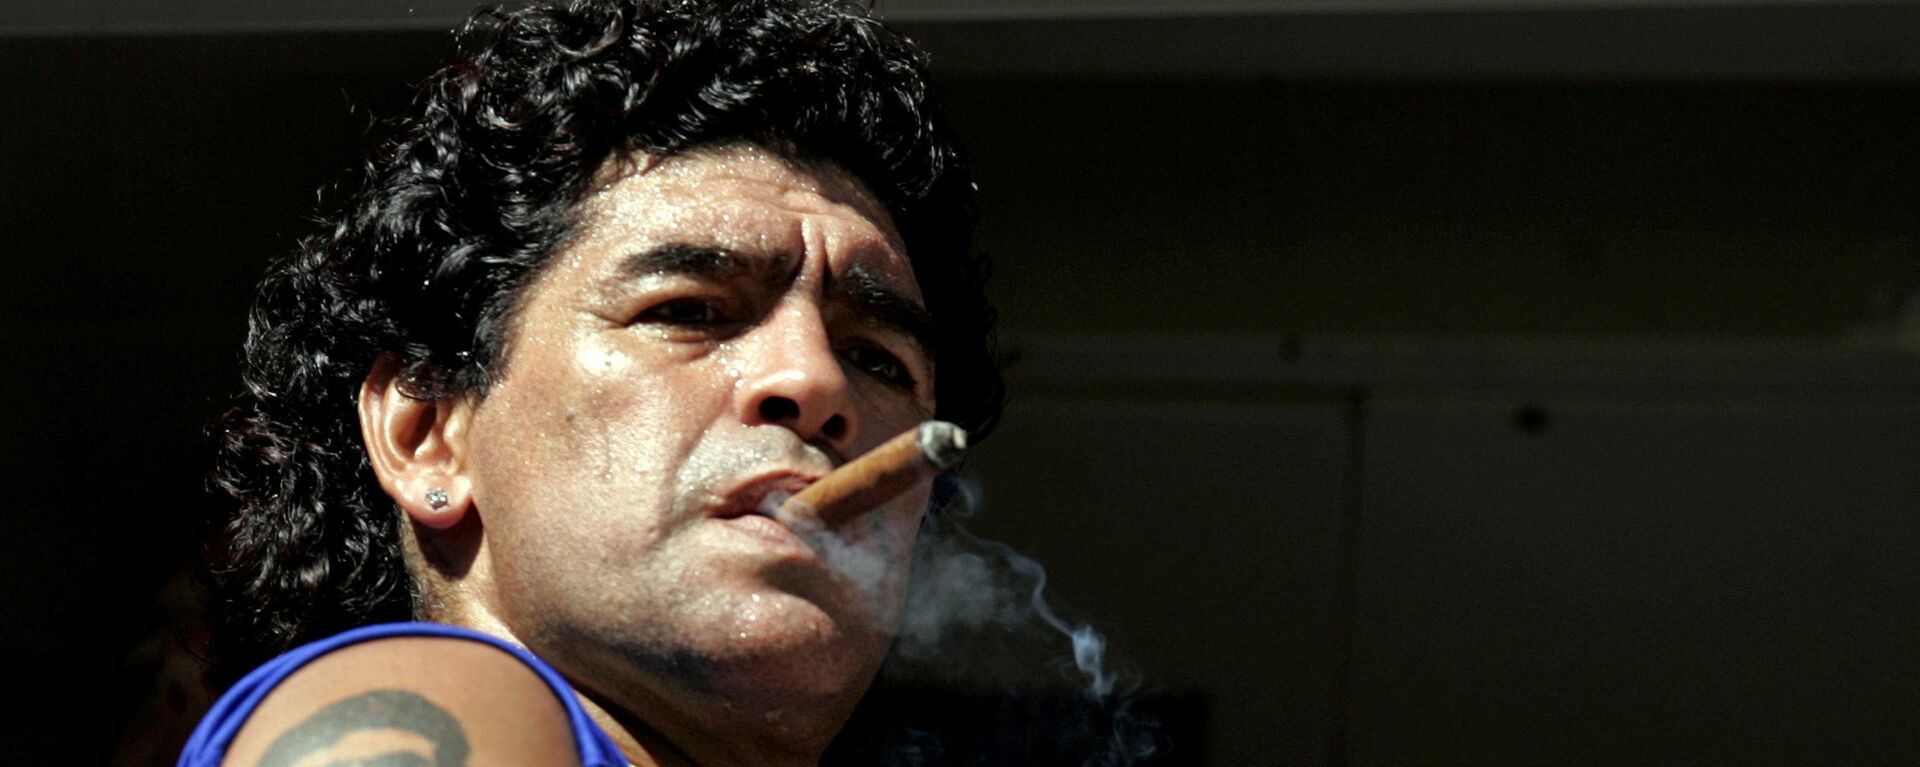 Diego Maradona fumando - Sputnik Mundo, 1920, 07.10.2021